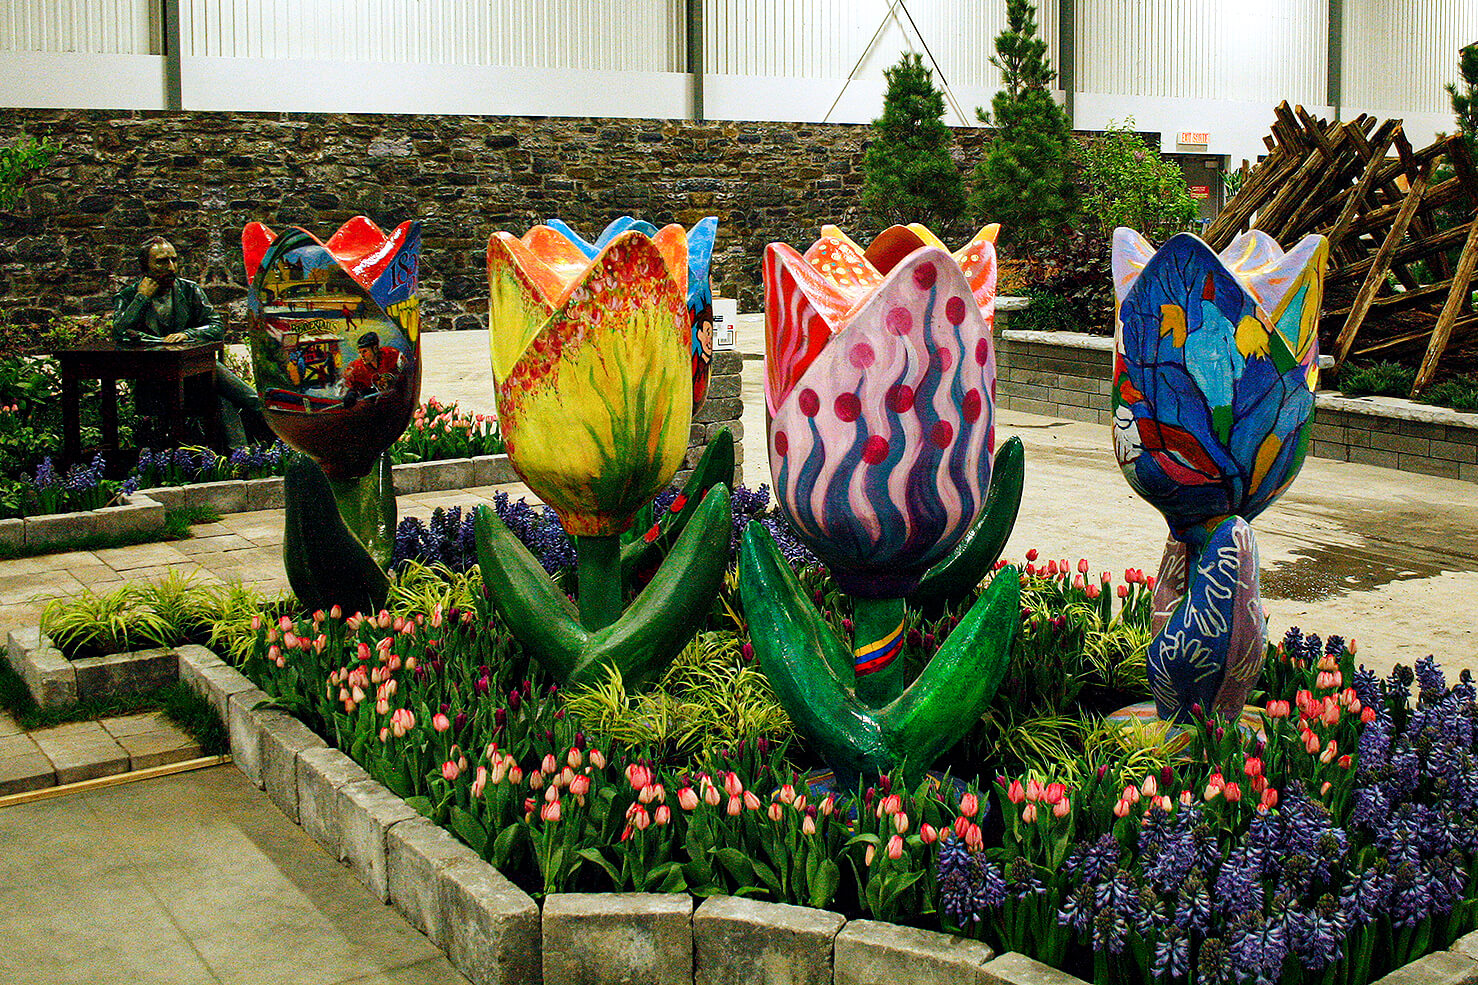 giant tulip sculptures in a garden display